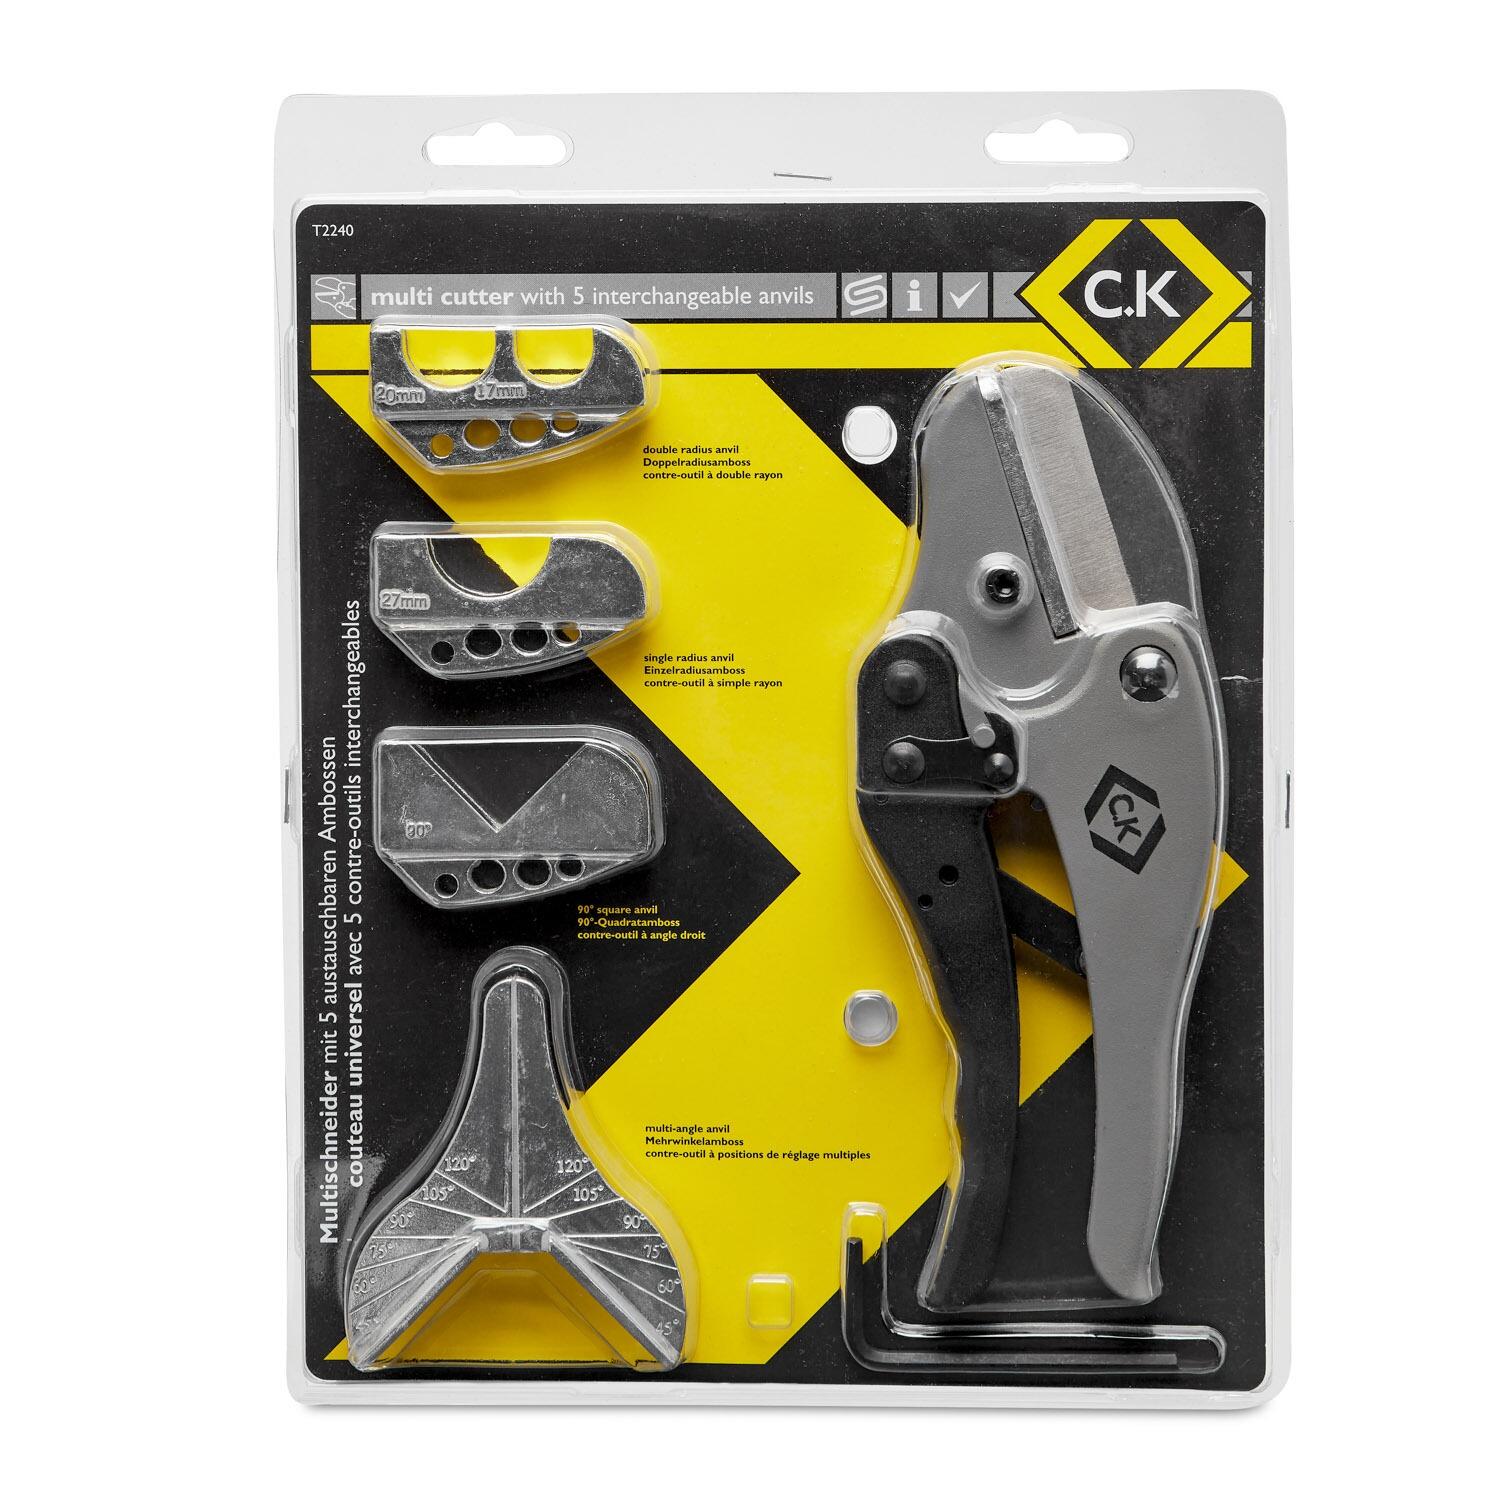 CK Tools Multi Cutter || T2240